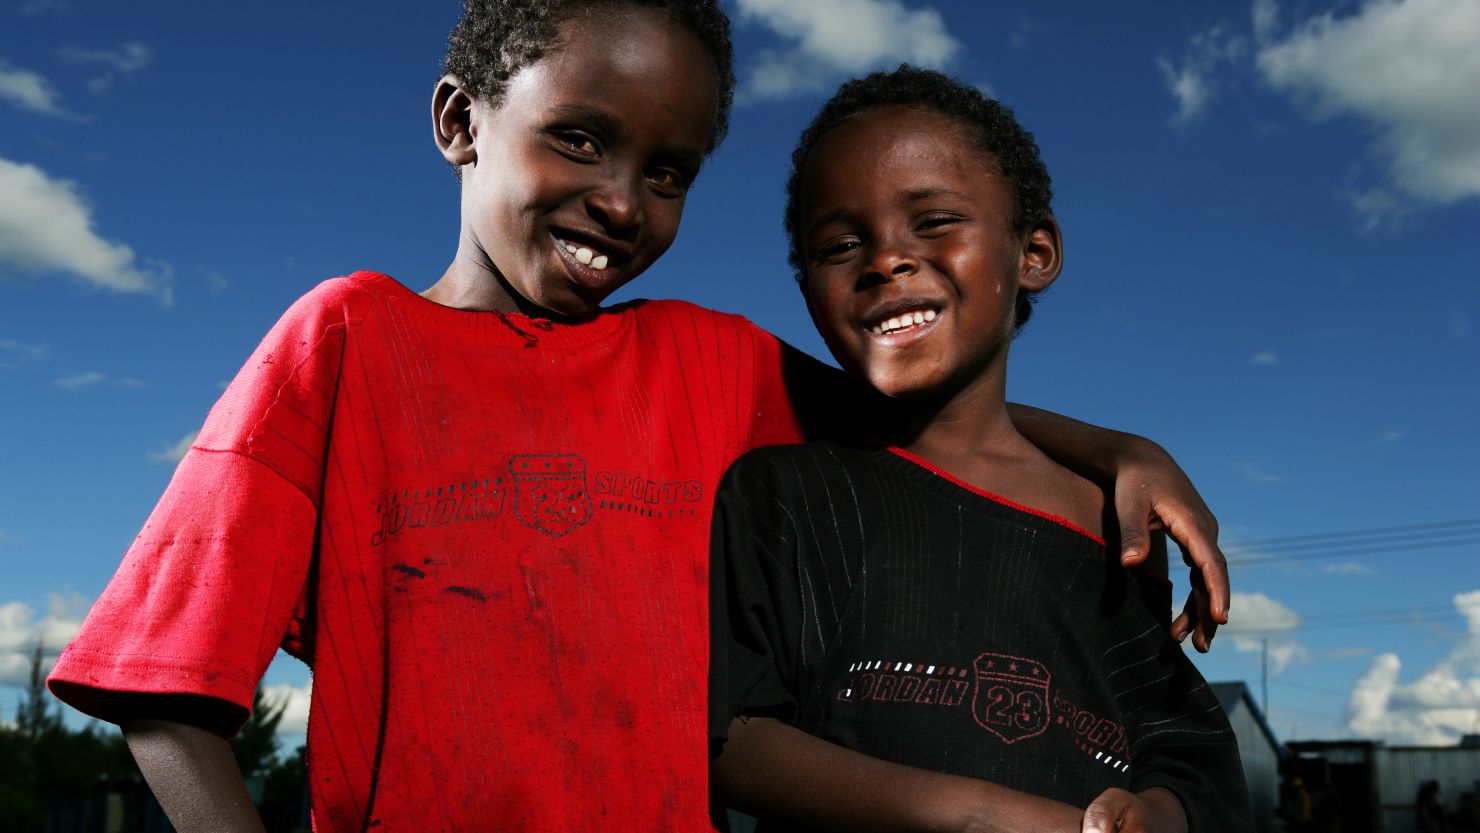 Children at school in the Mukuru kwa Njenga slum in Nairobi, Kenya.